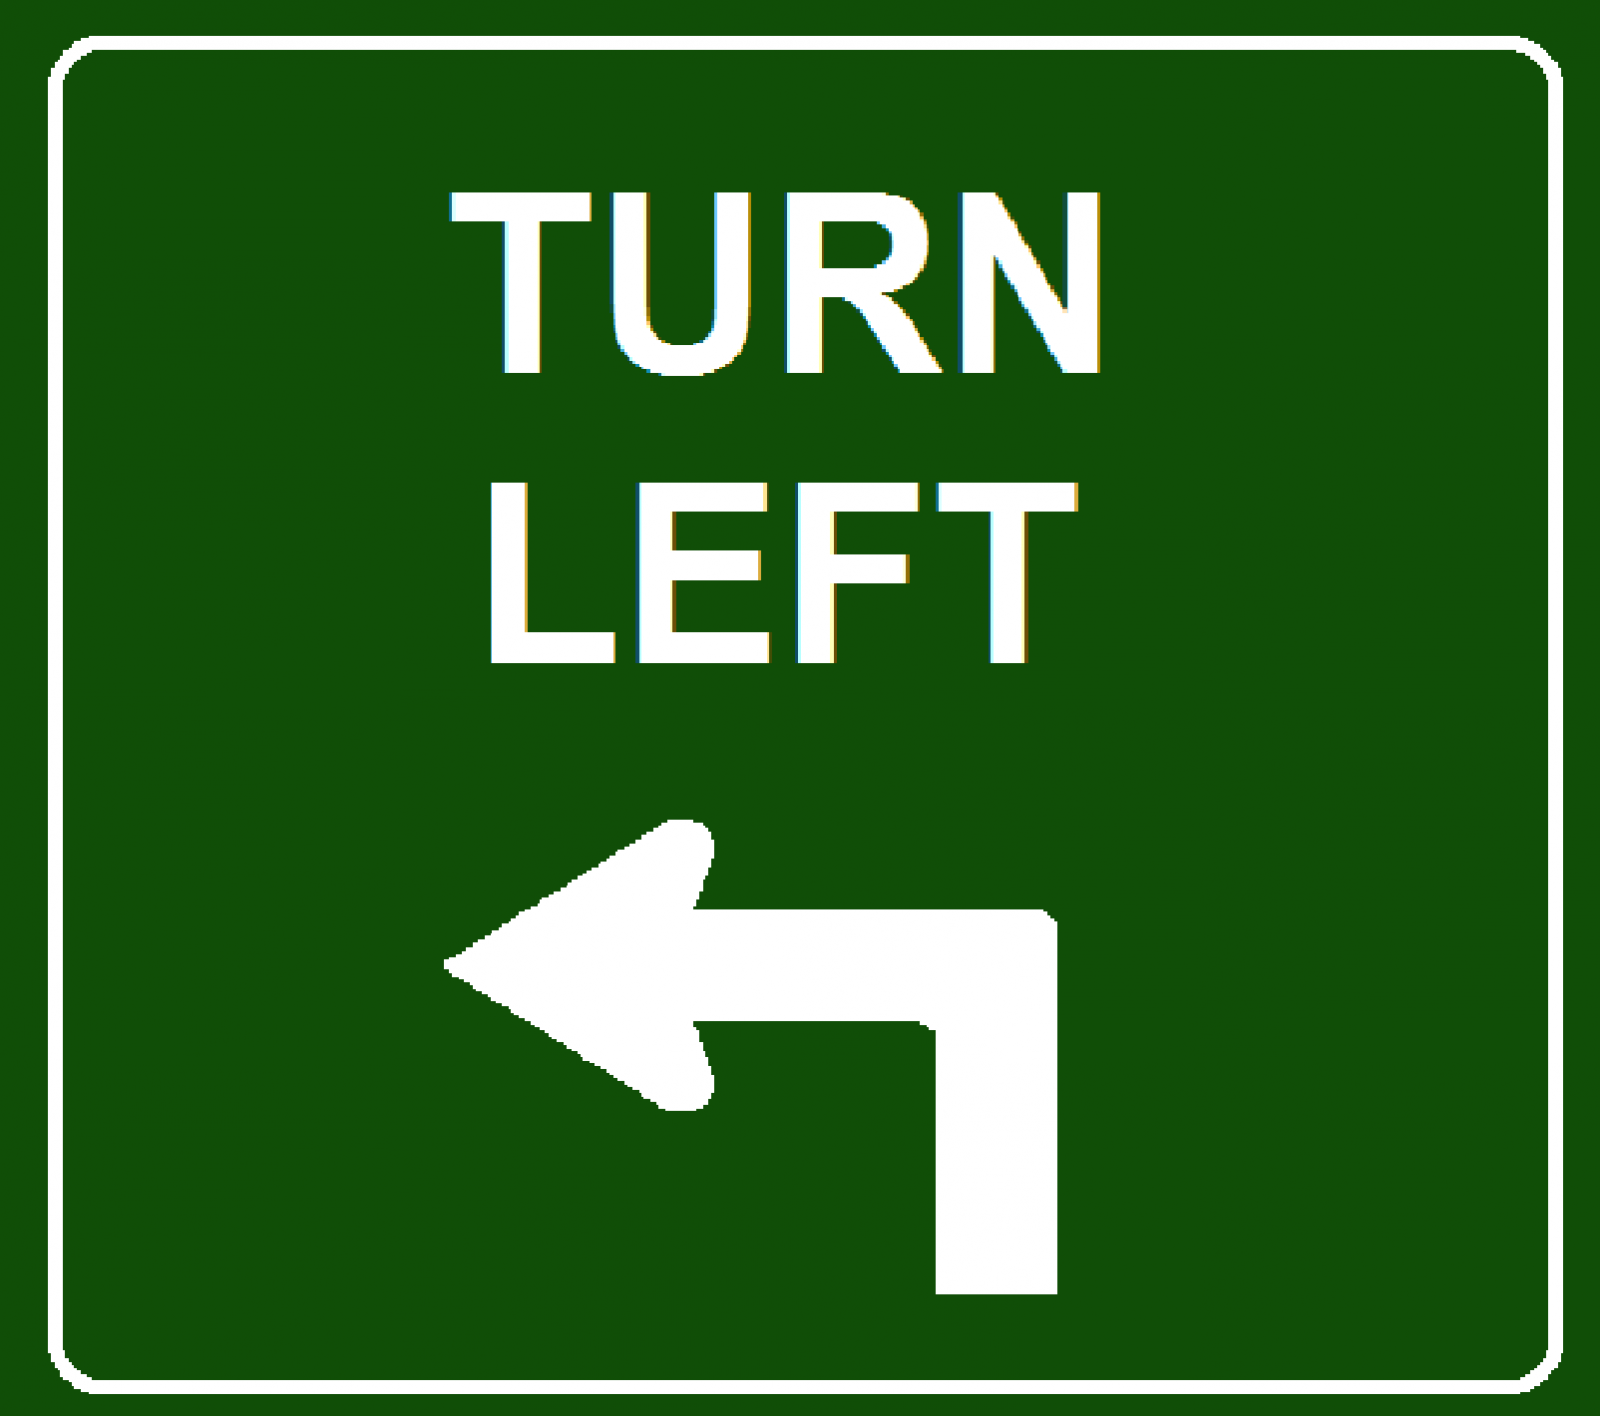 turn-left-option-2.png